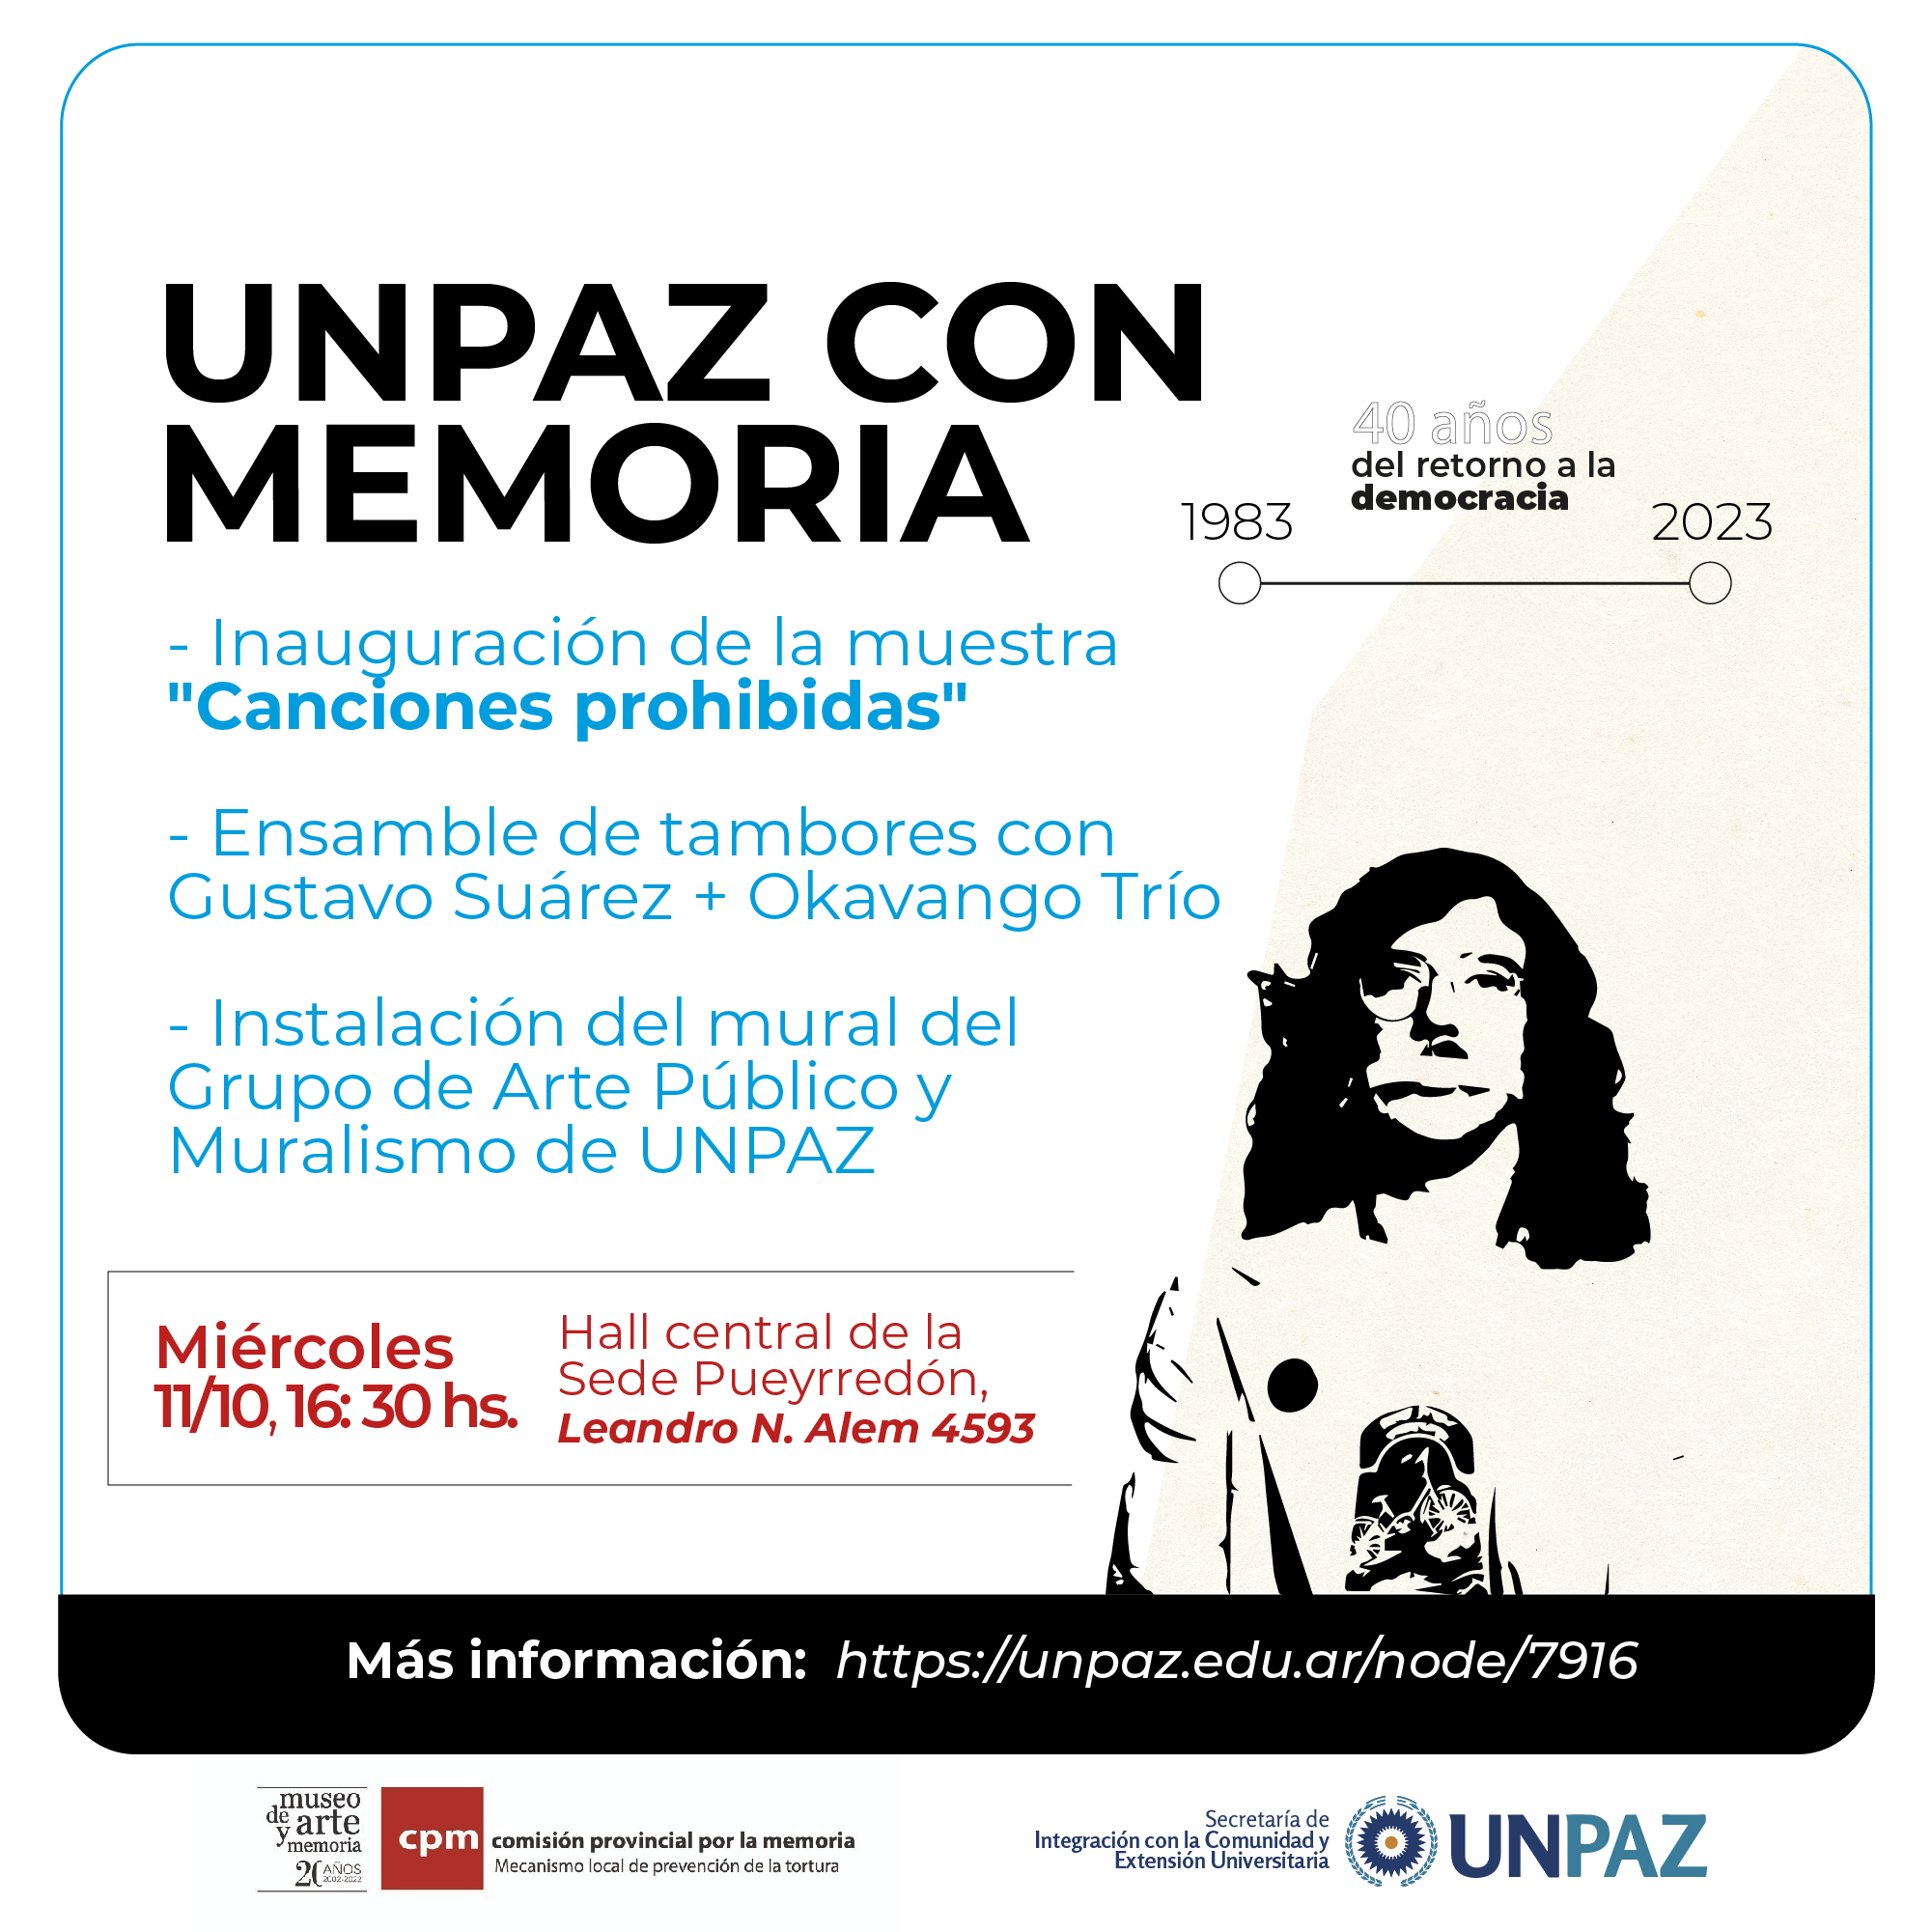 "UNPAZ CON MEMORIA. A 40 años del retorno a la democracia" - UNPAZ